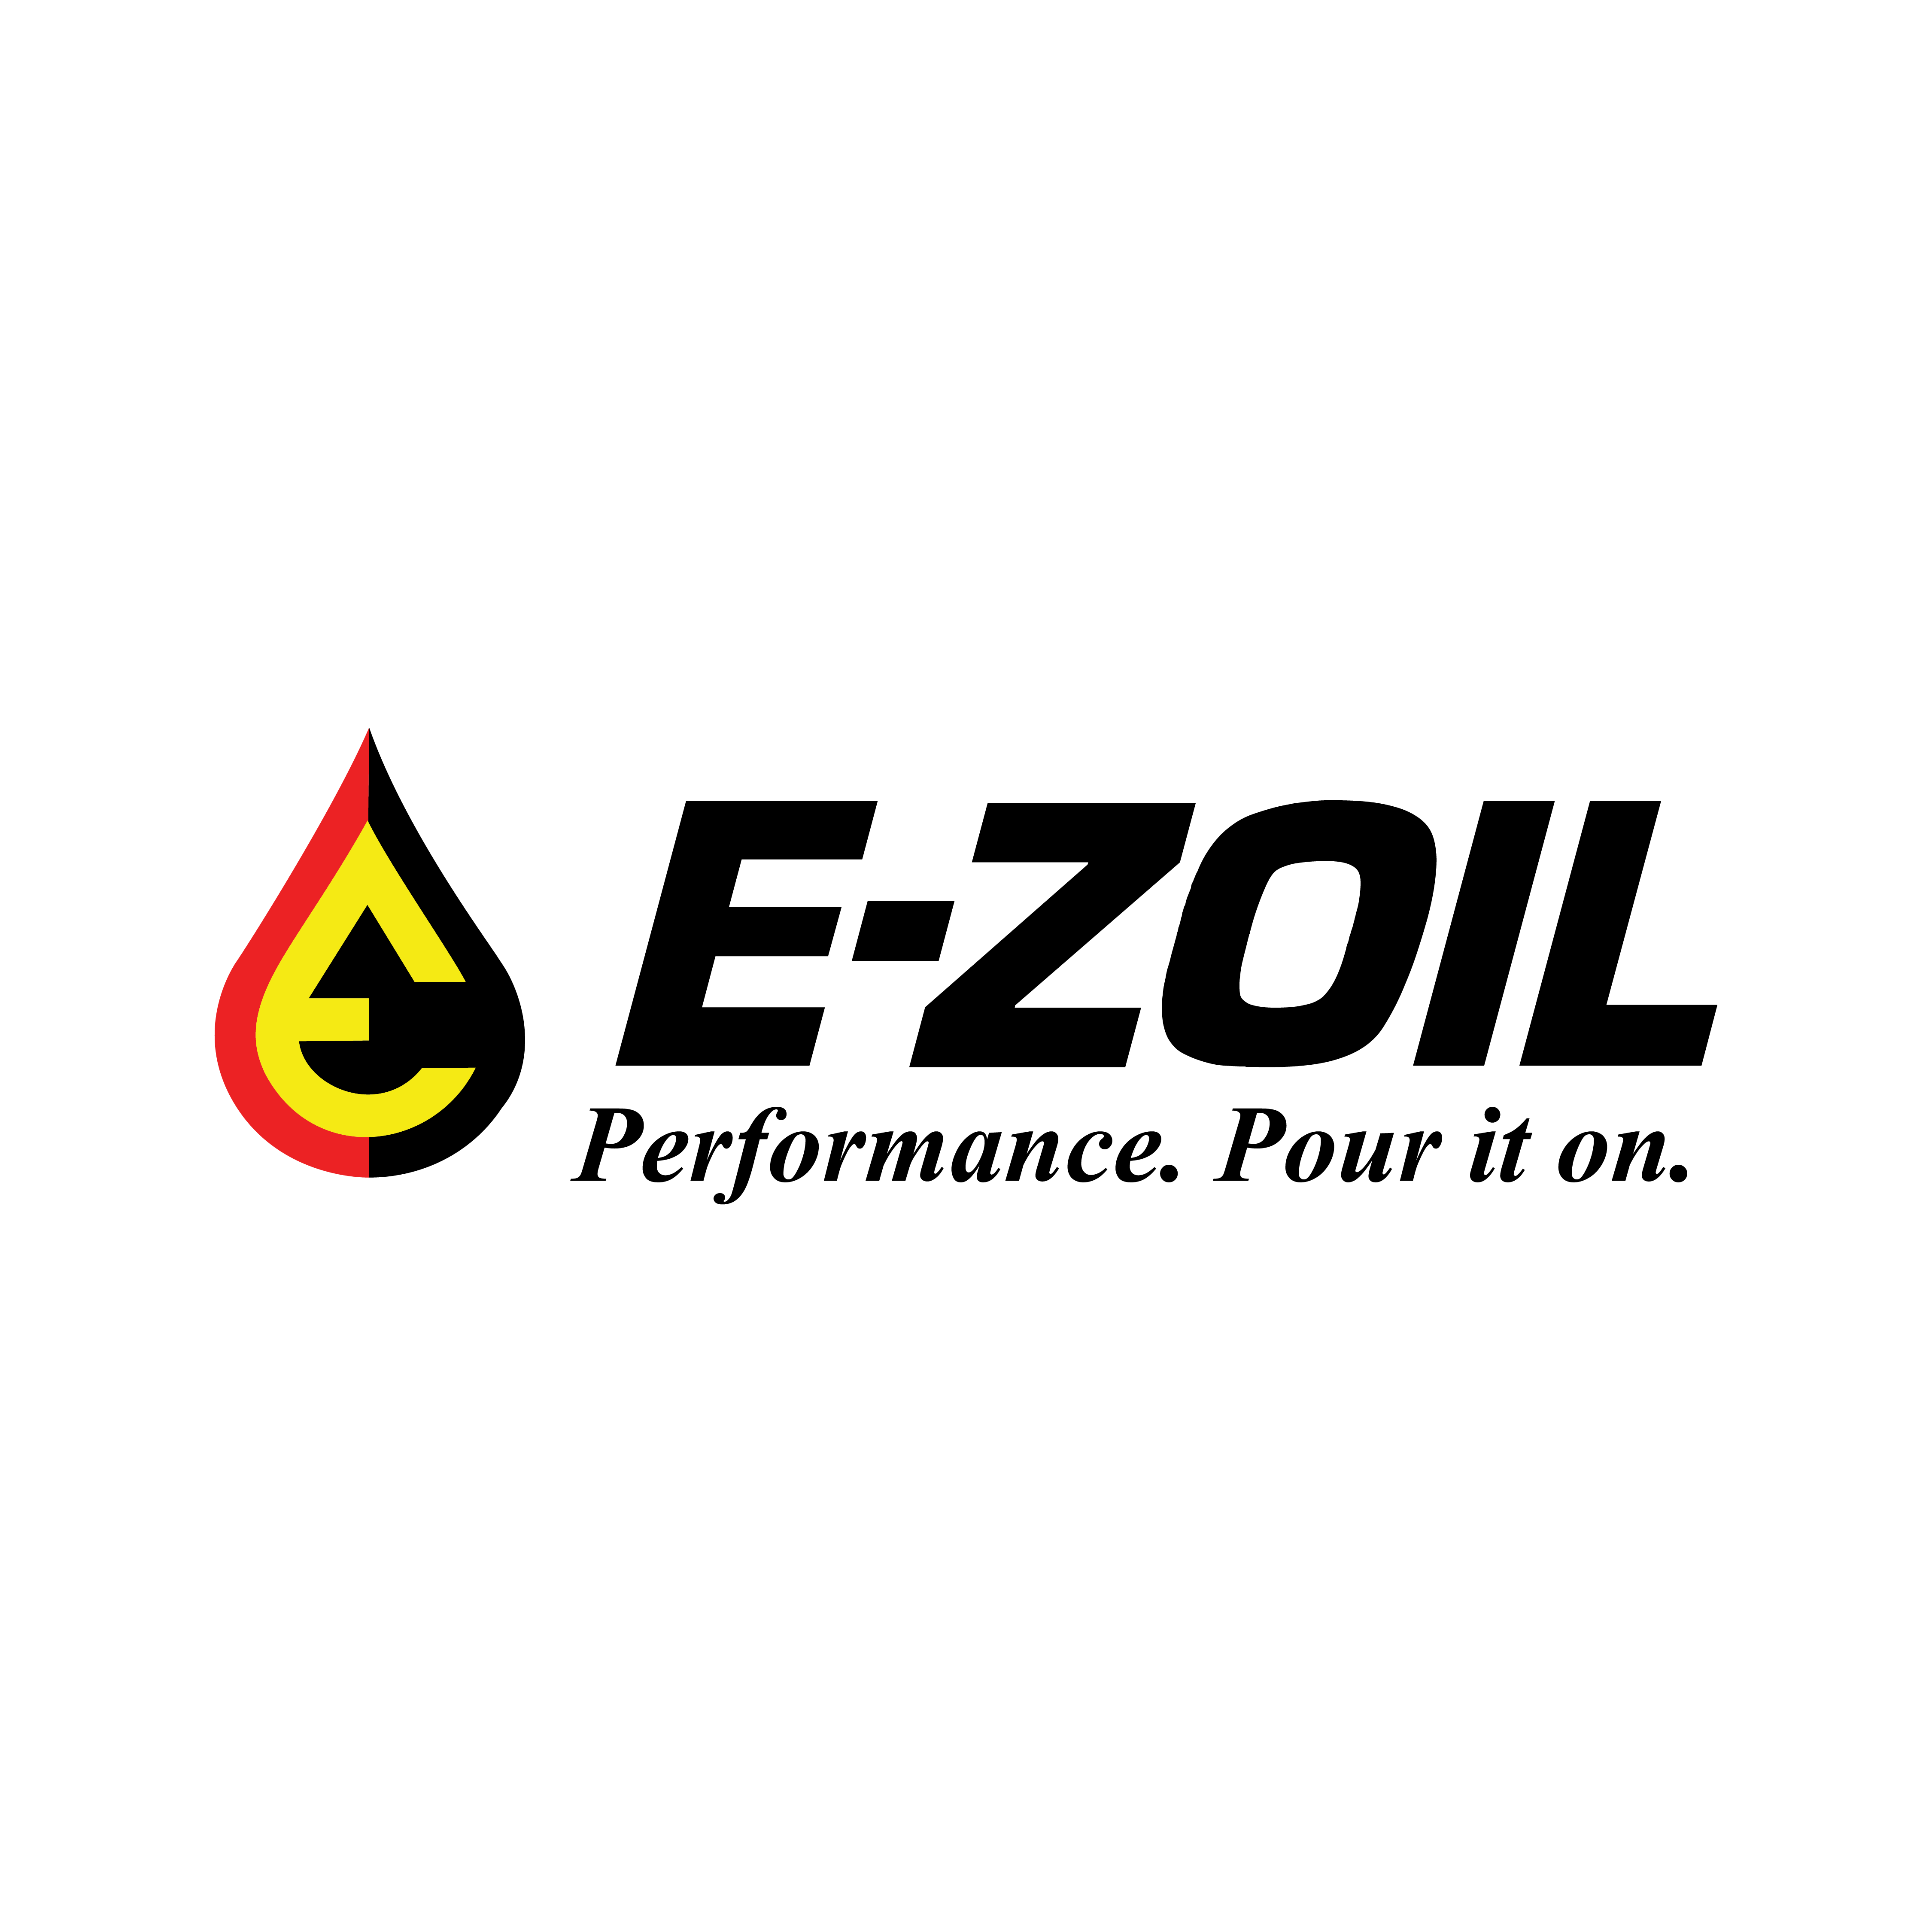 E-ZOIL Performance. Pour it on.